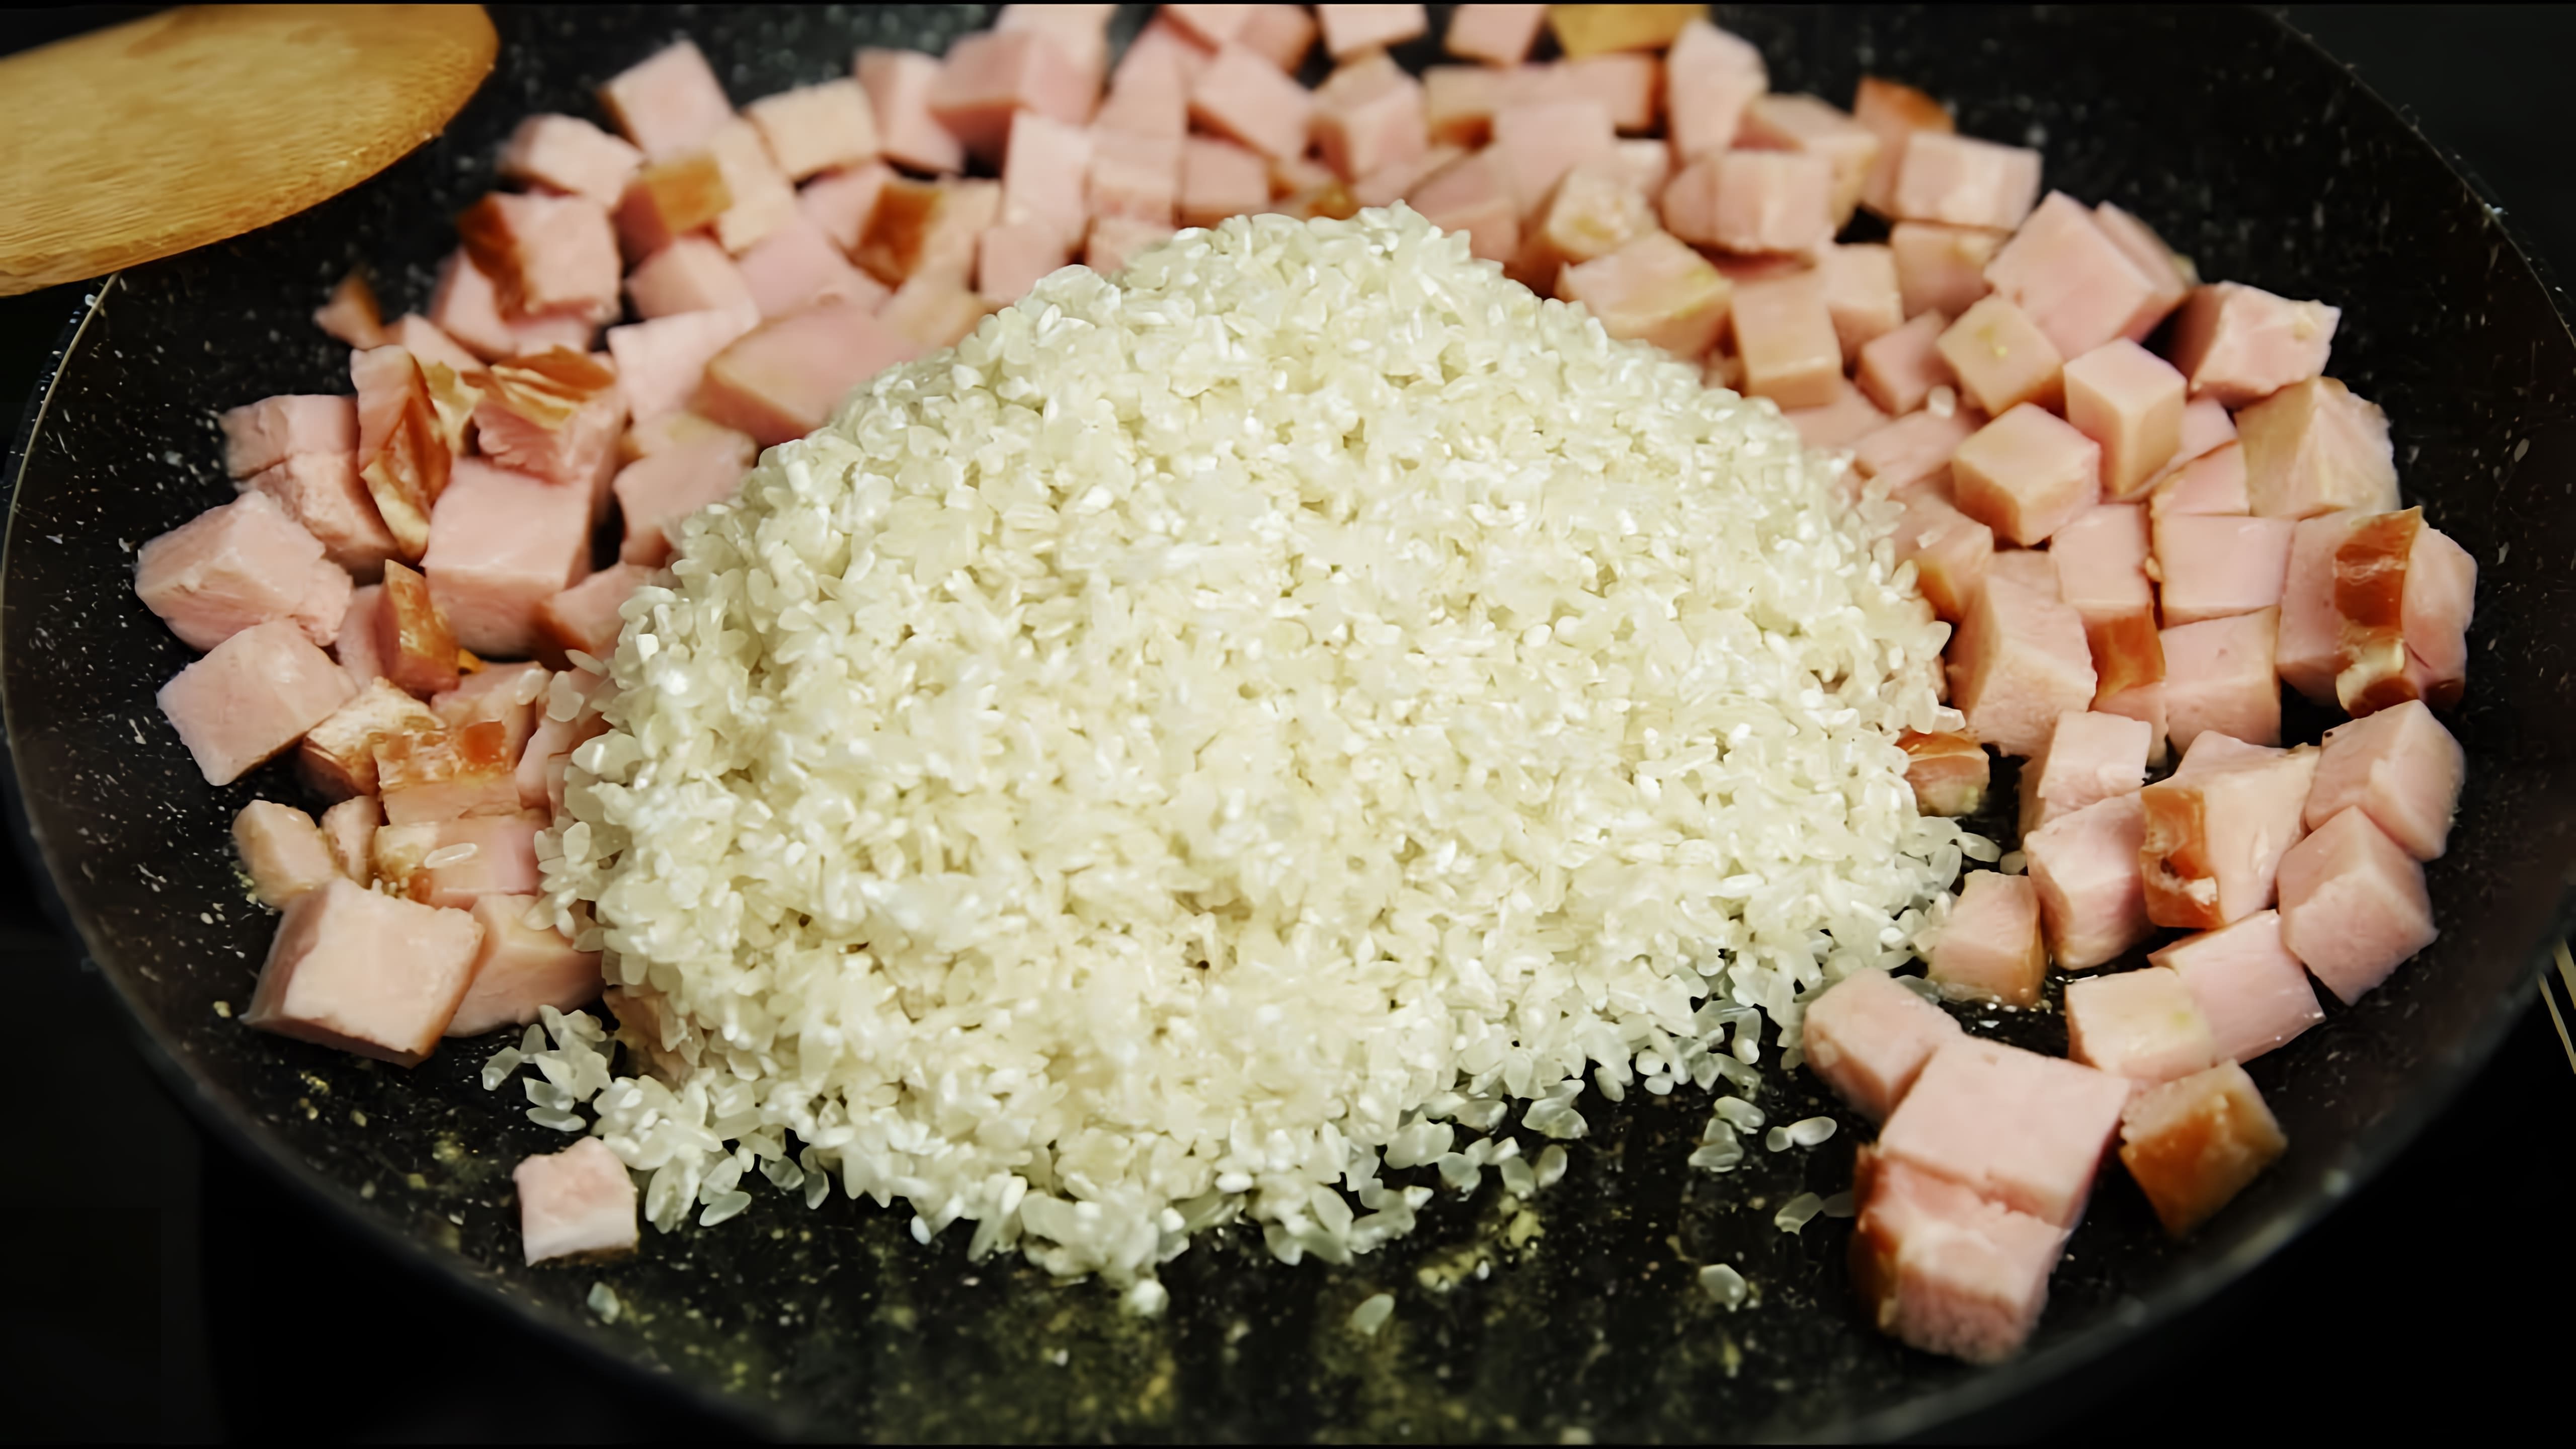 В этом видео демонстрируется рецепт быстрого и вкусного ужина на основе риса